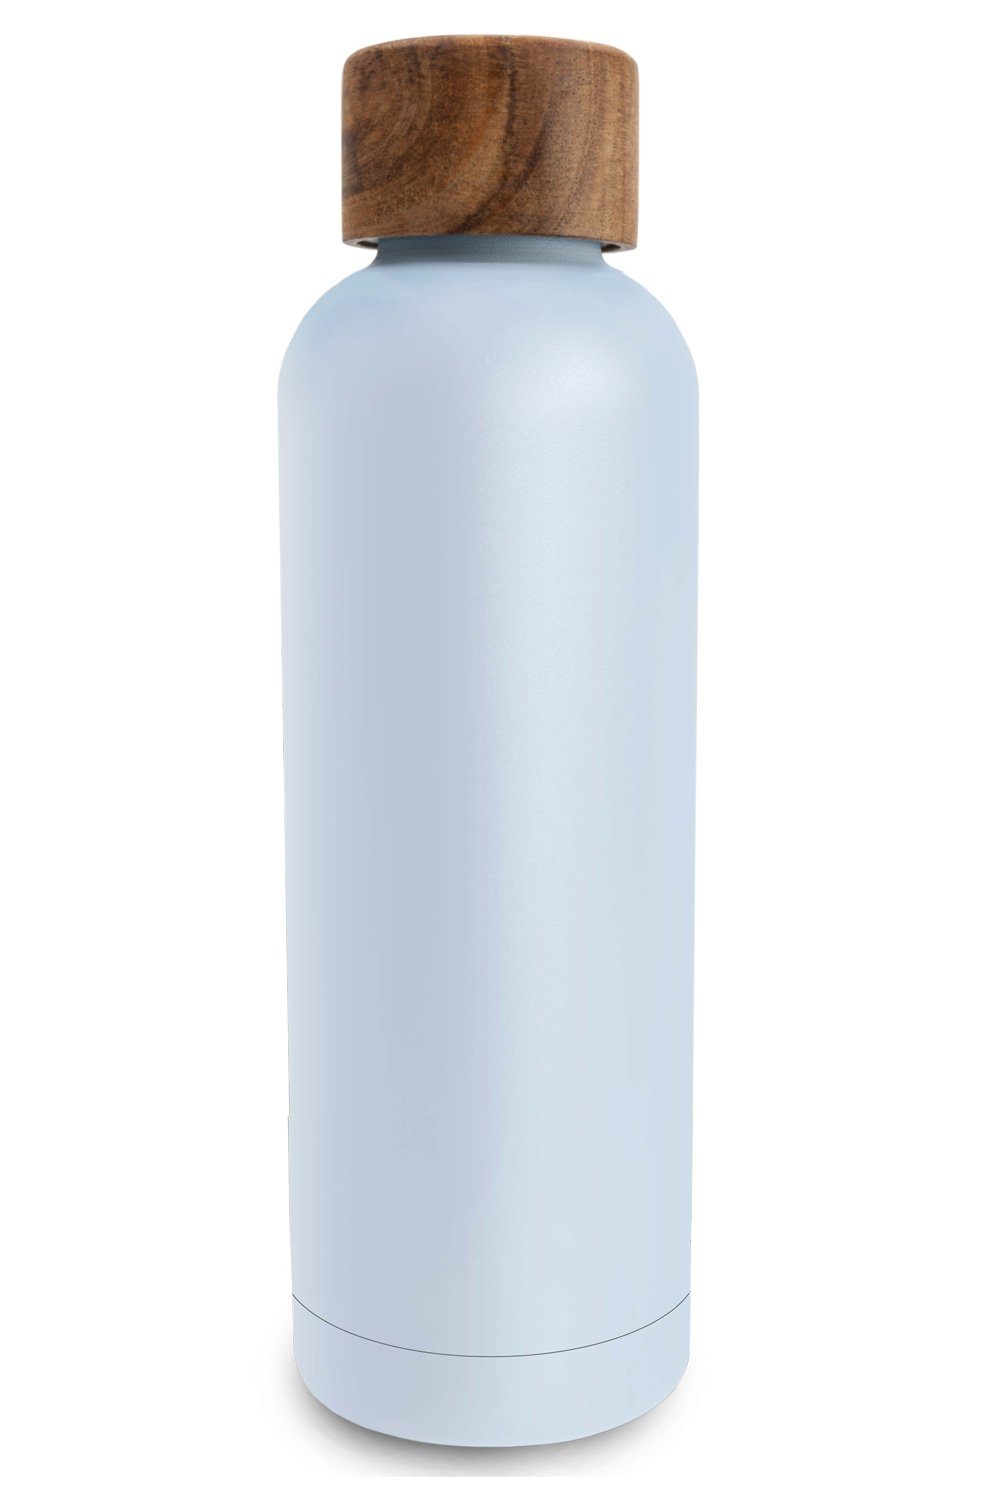 TRENDY AND NEW Trinkflasche T&N Edelstahl Trinkflasche 500ml - Wood Edition, Thermosflasche 500 ml für Büro, auslaufsichere, robuste, isolierte Wasserflasche 0,5l für Kohlensäure, Thermoskanne 500ml für unterwegs, Isolierflasche für Tee & Kaffee, hält 14h HEISS 29h EISKALT, Flasche für Sprudel-Wasser Sky Blue